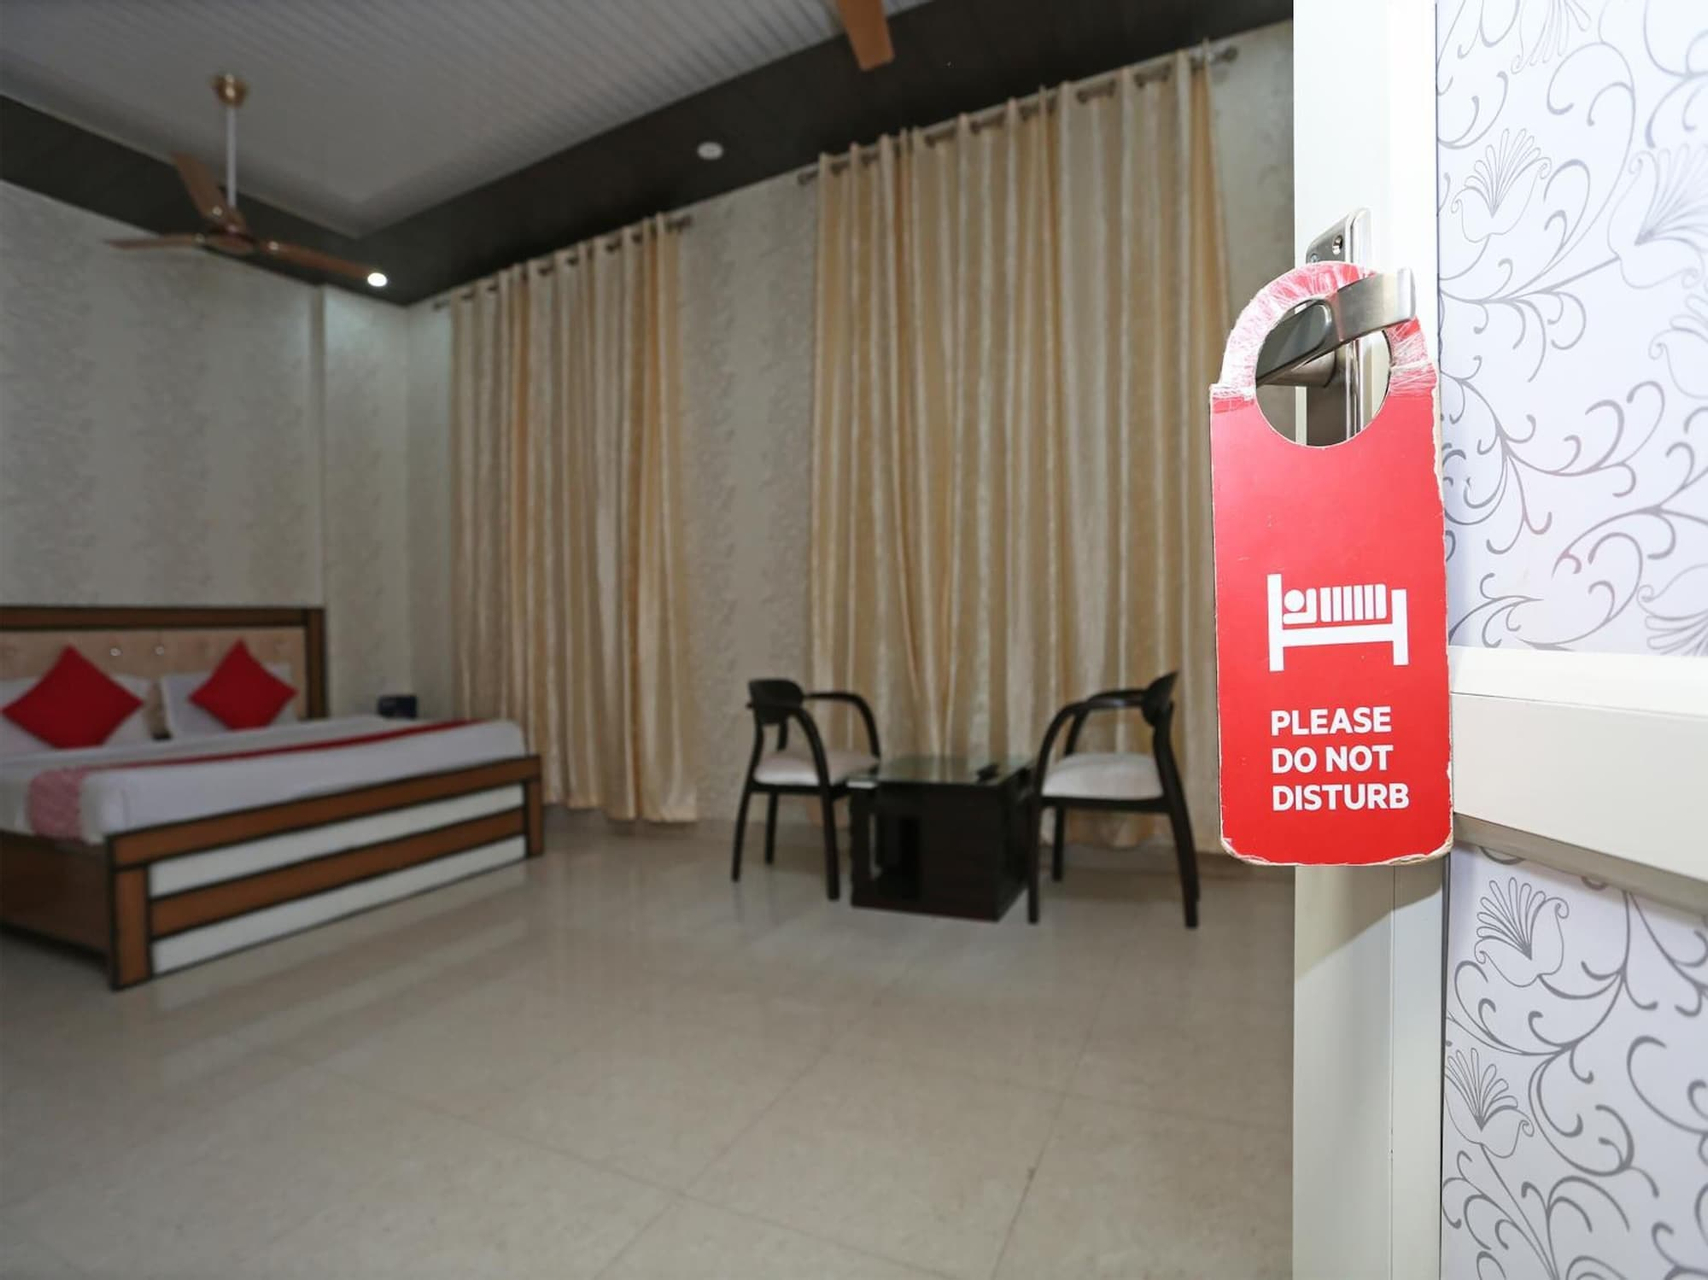 Public Area 2, Sudhir Hotels, Sonipat